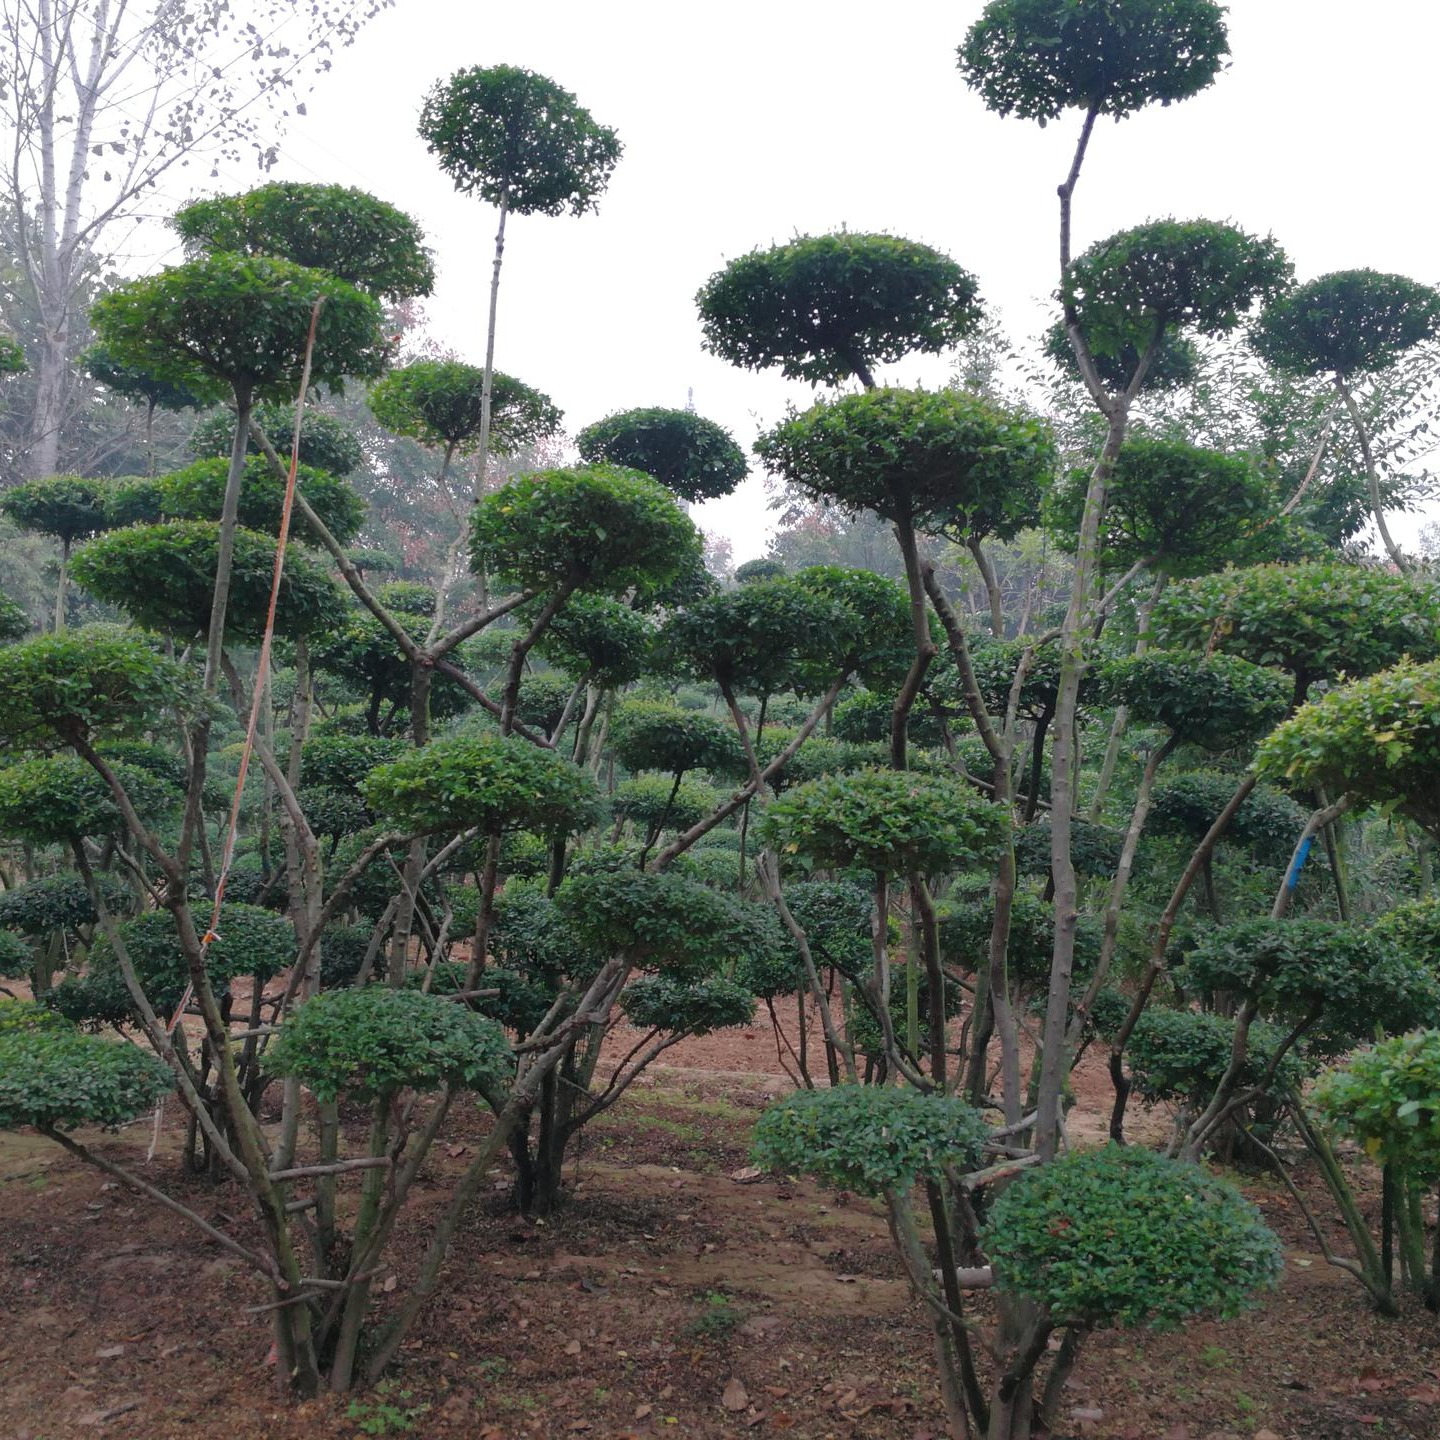 鄢陵县梦宇花木园销售2米高大型小叶女贞造型树是优美的景观树